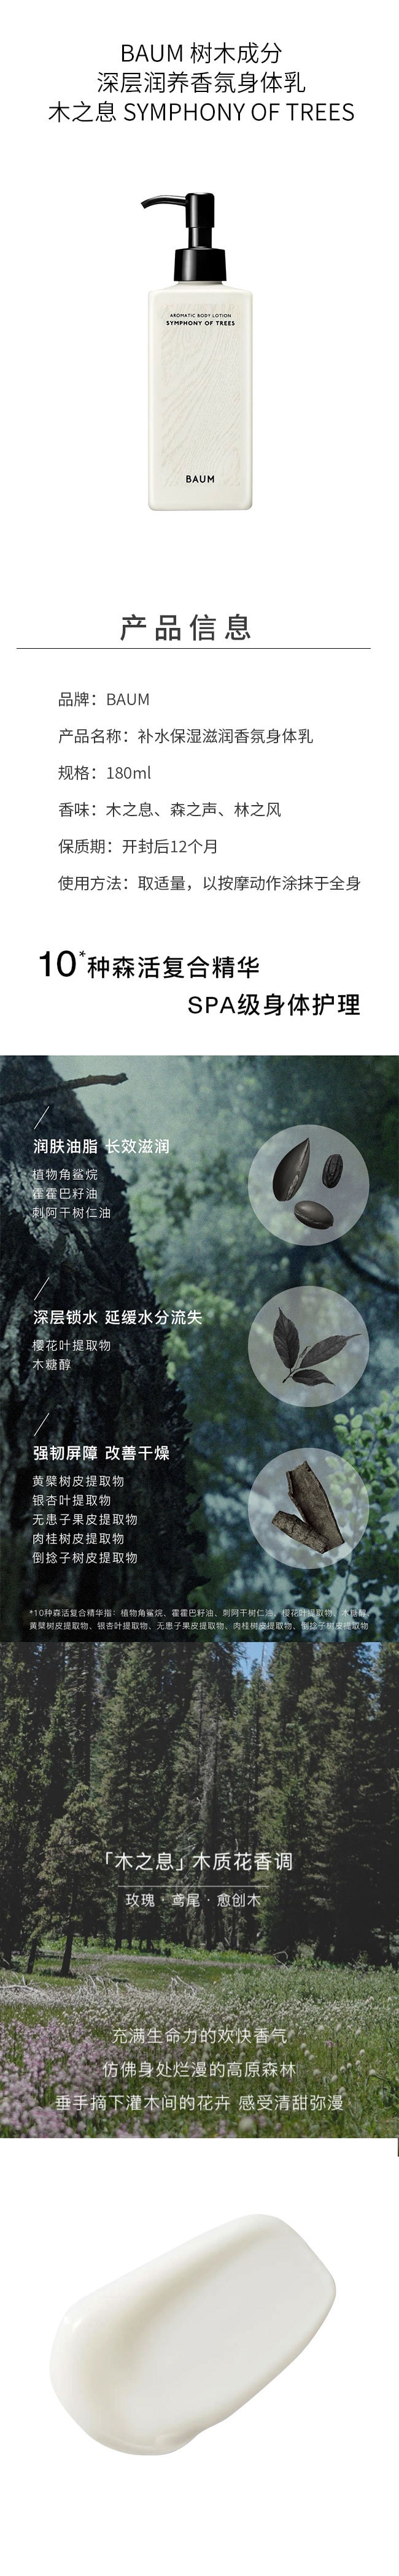 【日本直效郵件】BAUM 樹木成分深層潤養香氛身體乳180ml 森之聲